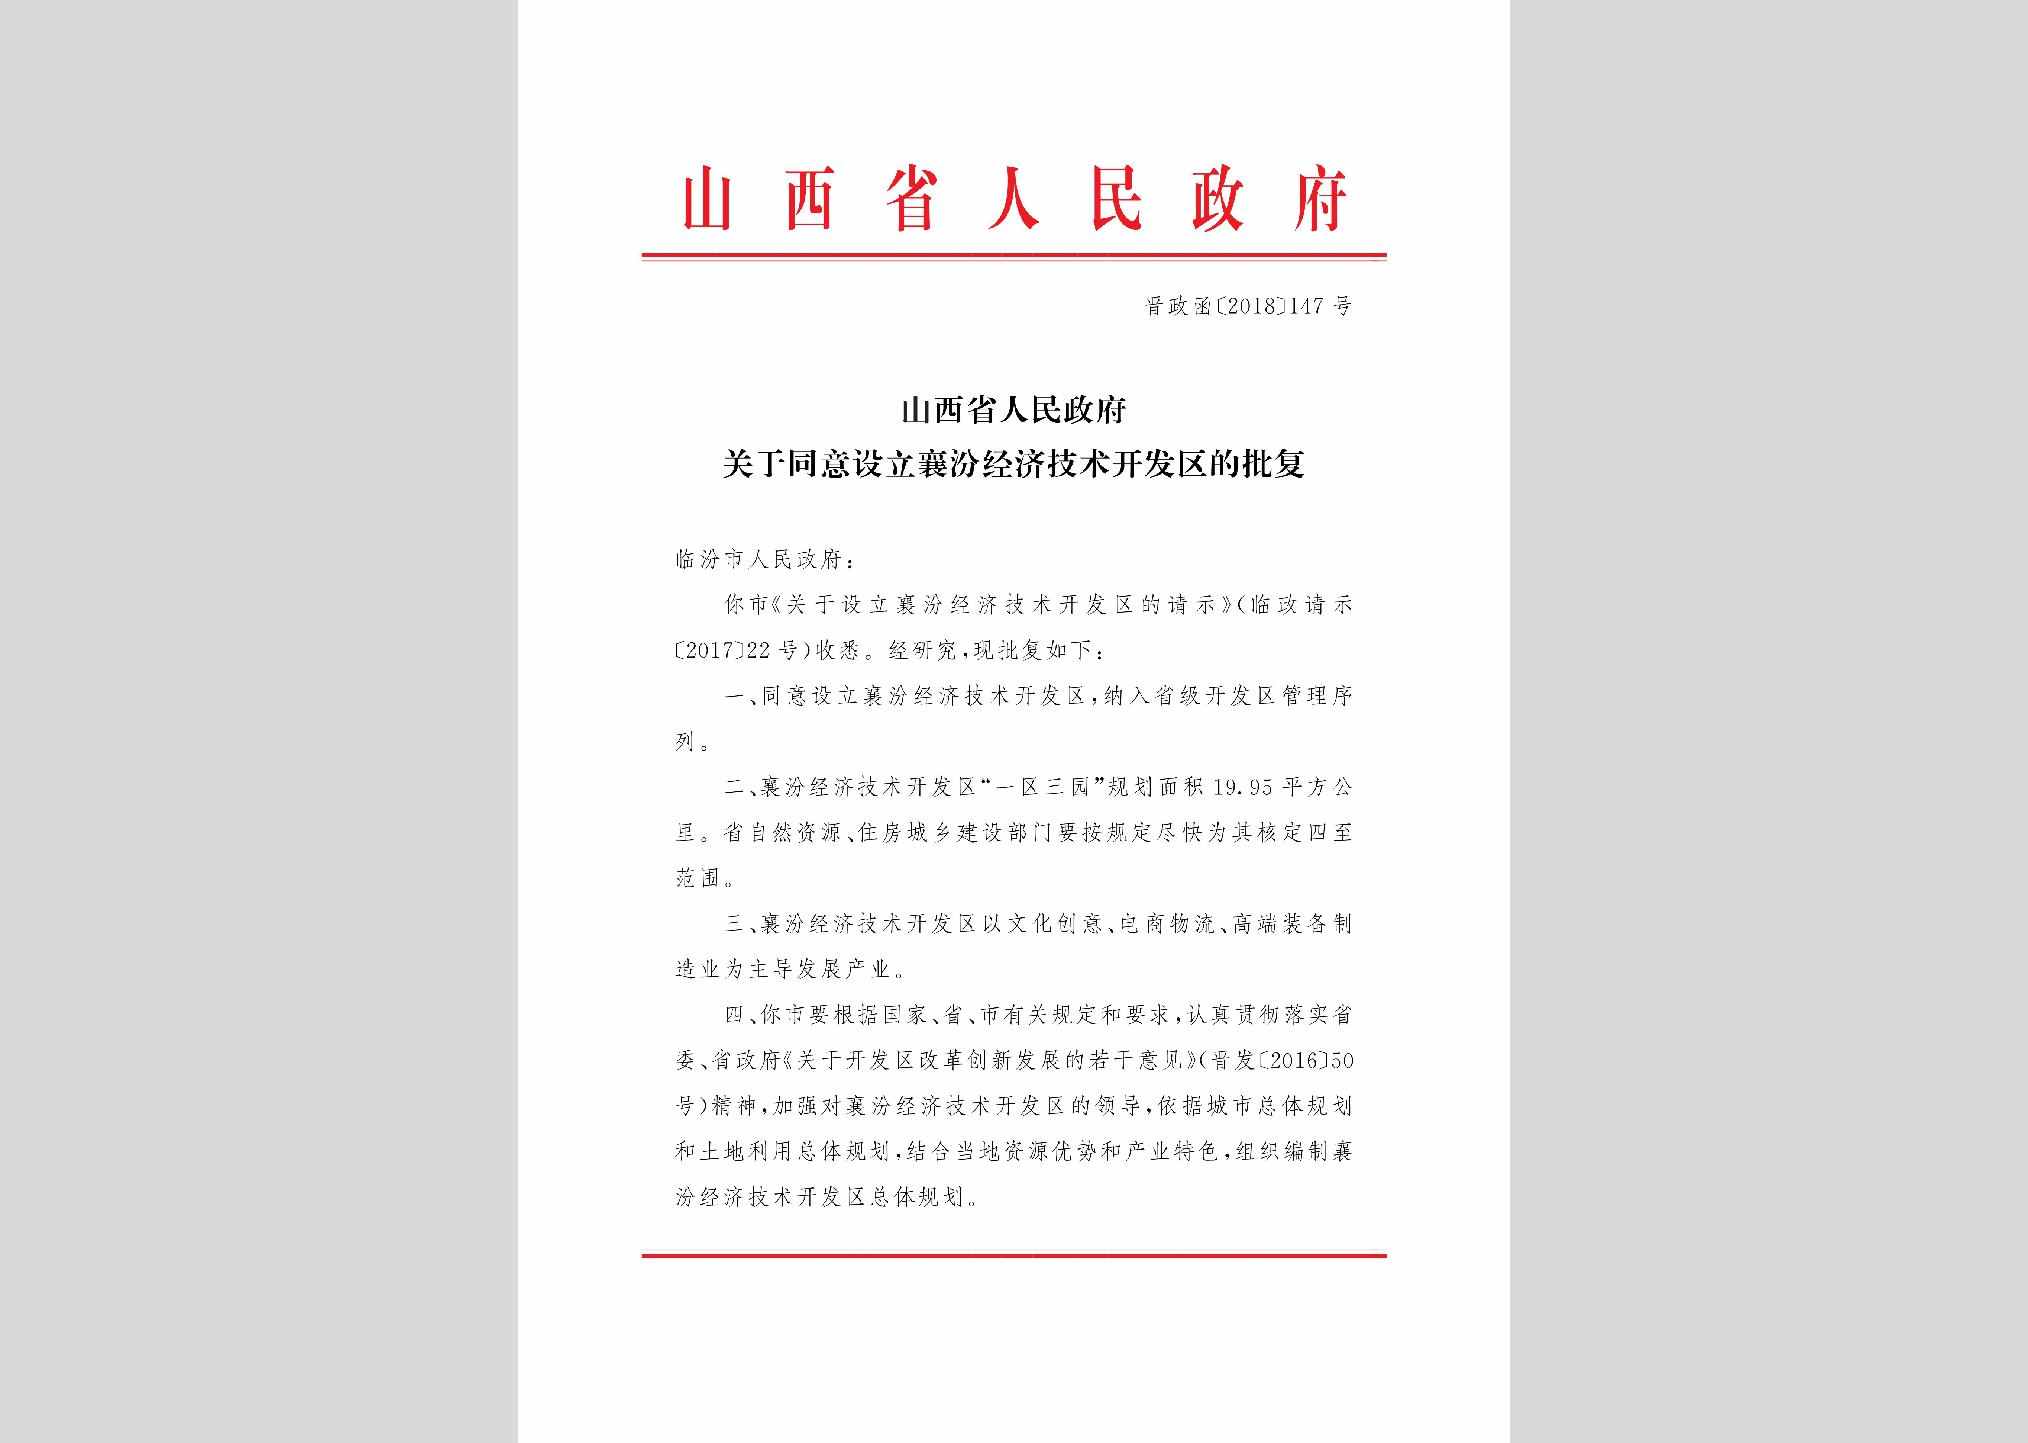 晋政函[2018]147号：山西省人民政府关于同意设立襄汾经济技术开发区的批复